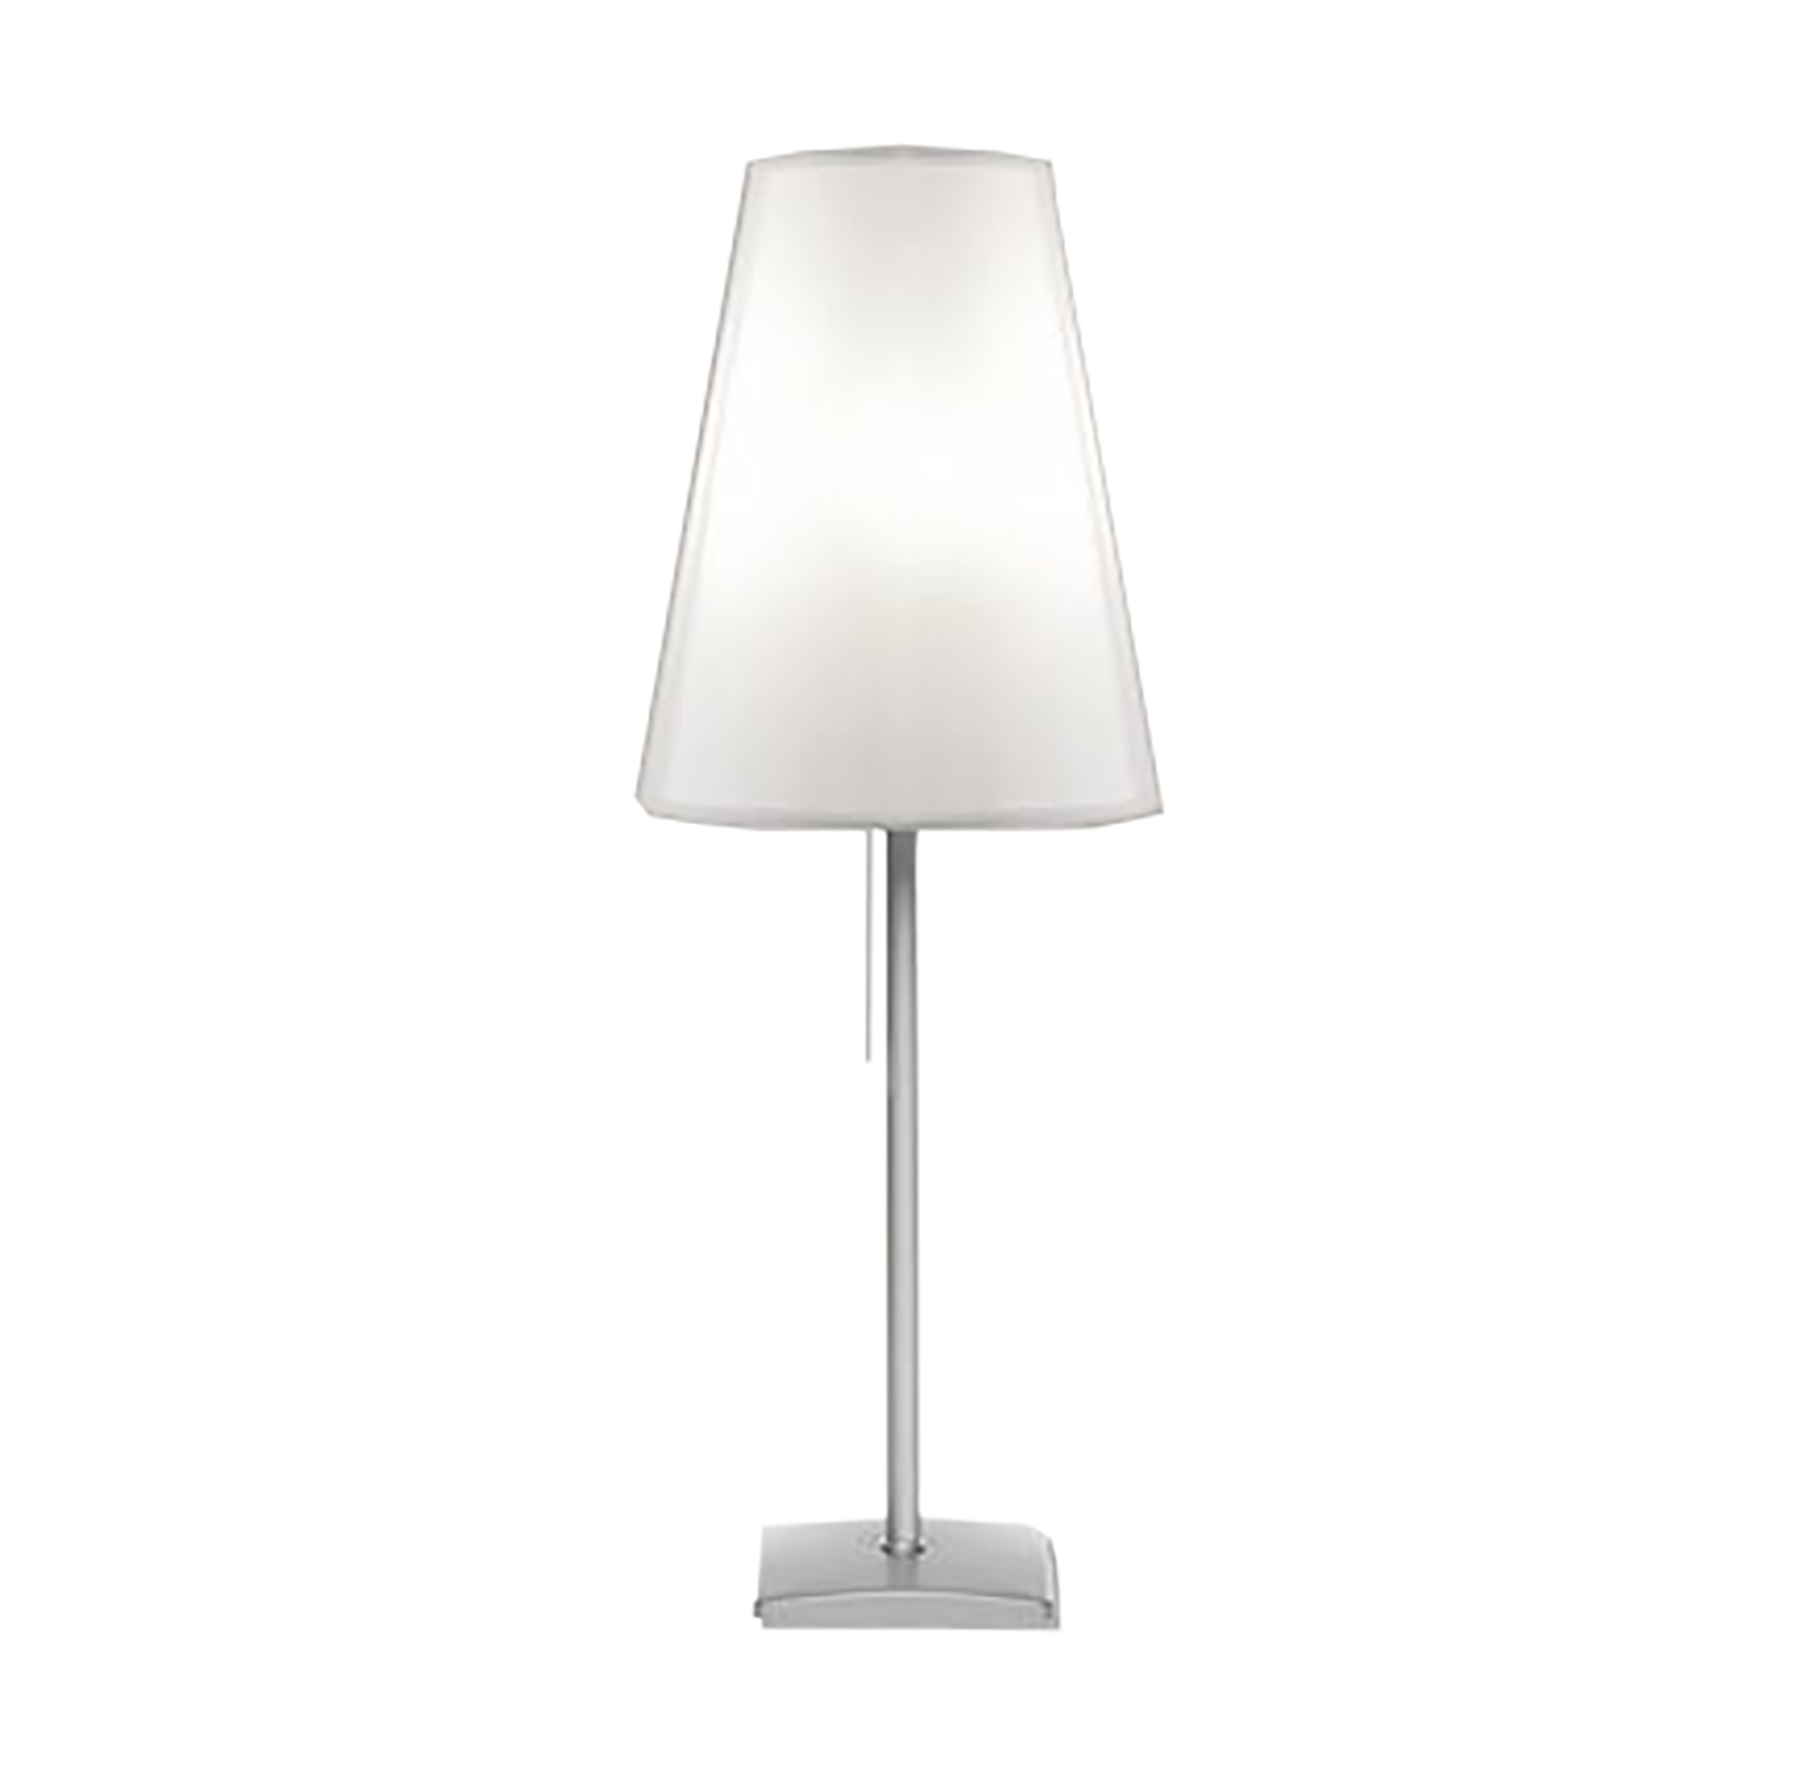 Lampe AMBIANCE Lumi Led est une lampe à abta-jour lumi translucide dotée d'une prise USB dans le socle permettant de charger un smartphone.
Elle diffuse une jolie lumière pour egayer halls d'accueil ou bureaux.
Hauteur de 640 à 820 mm - P220 mm